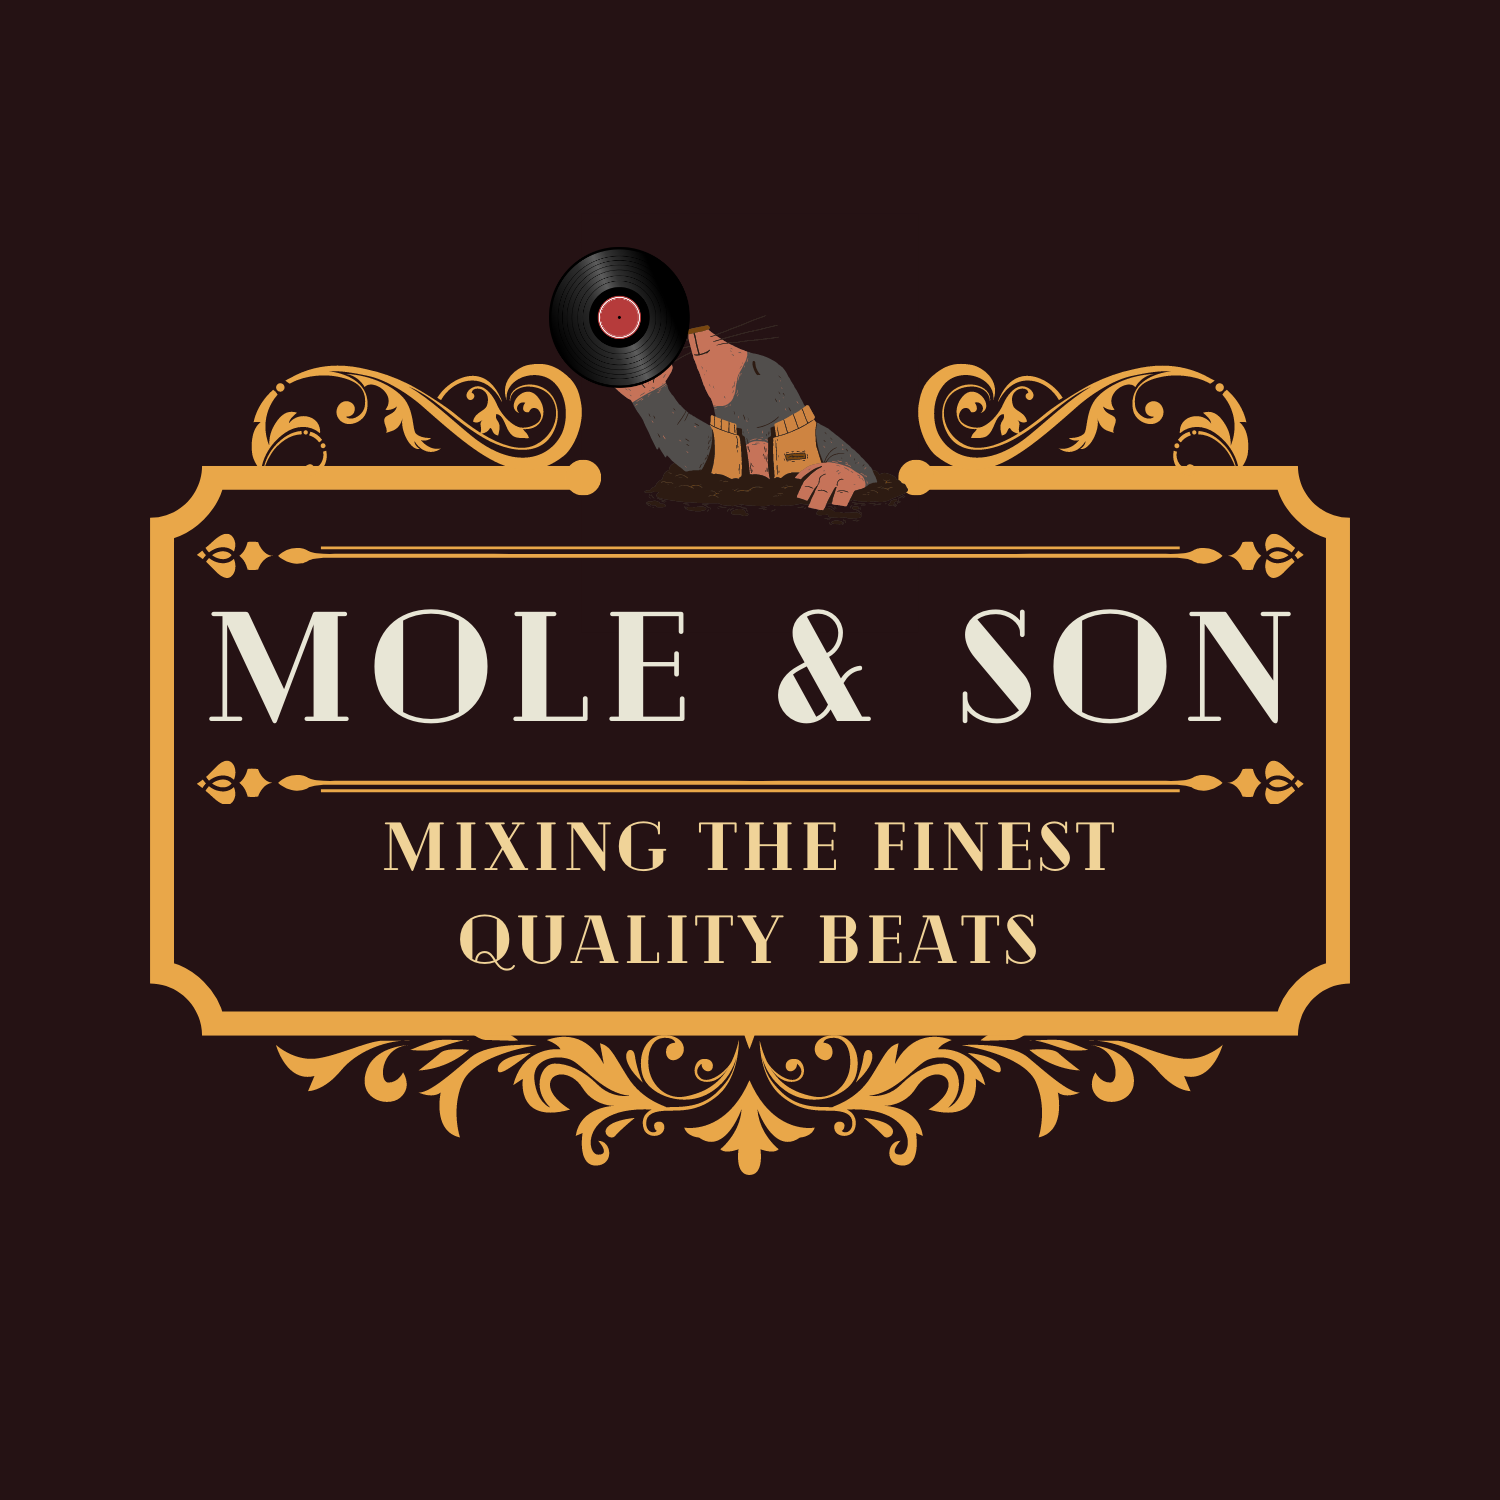 Mole & Son
